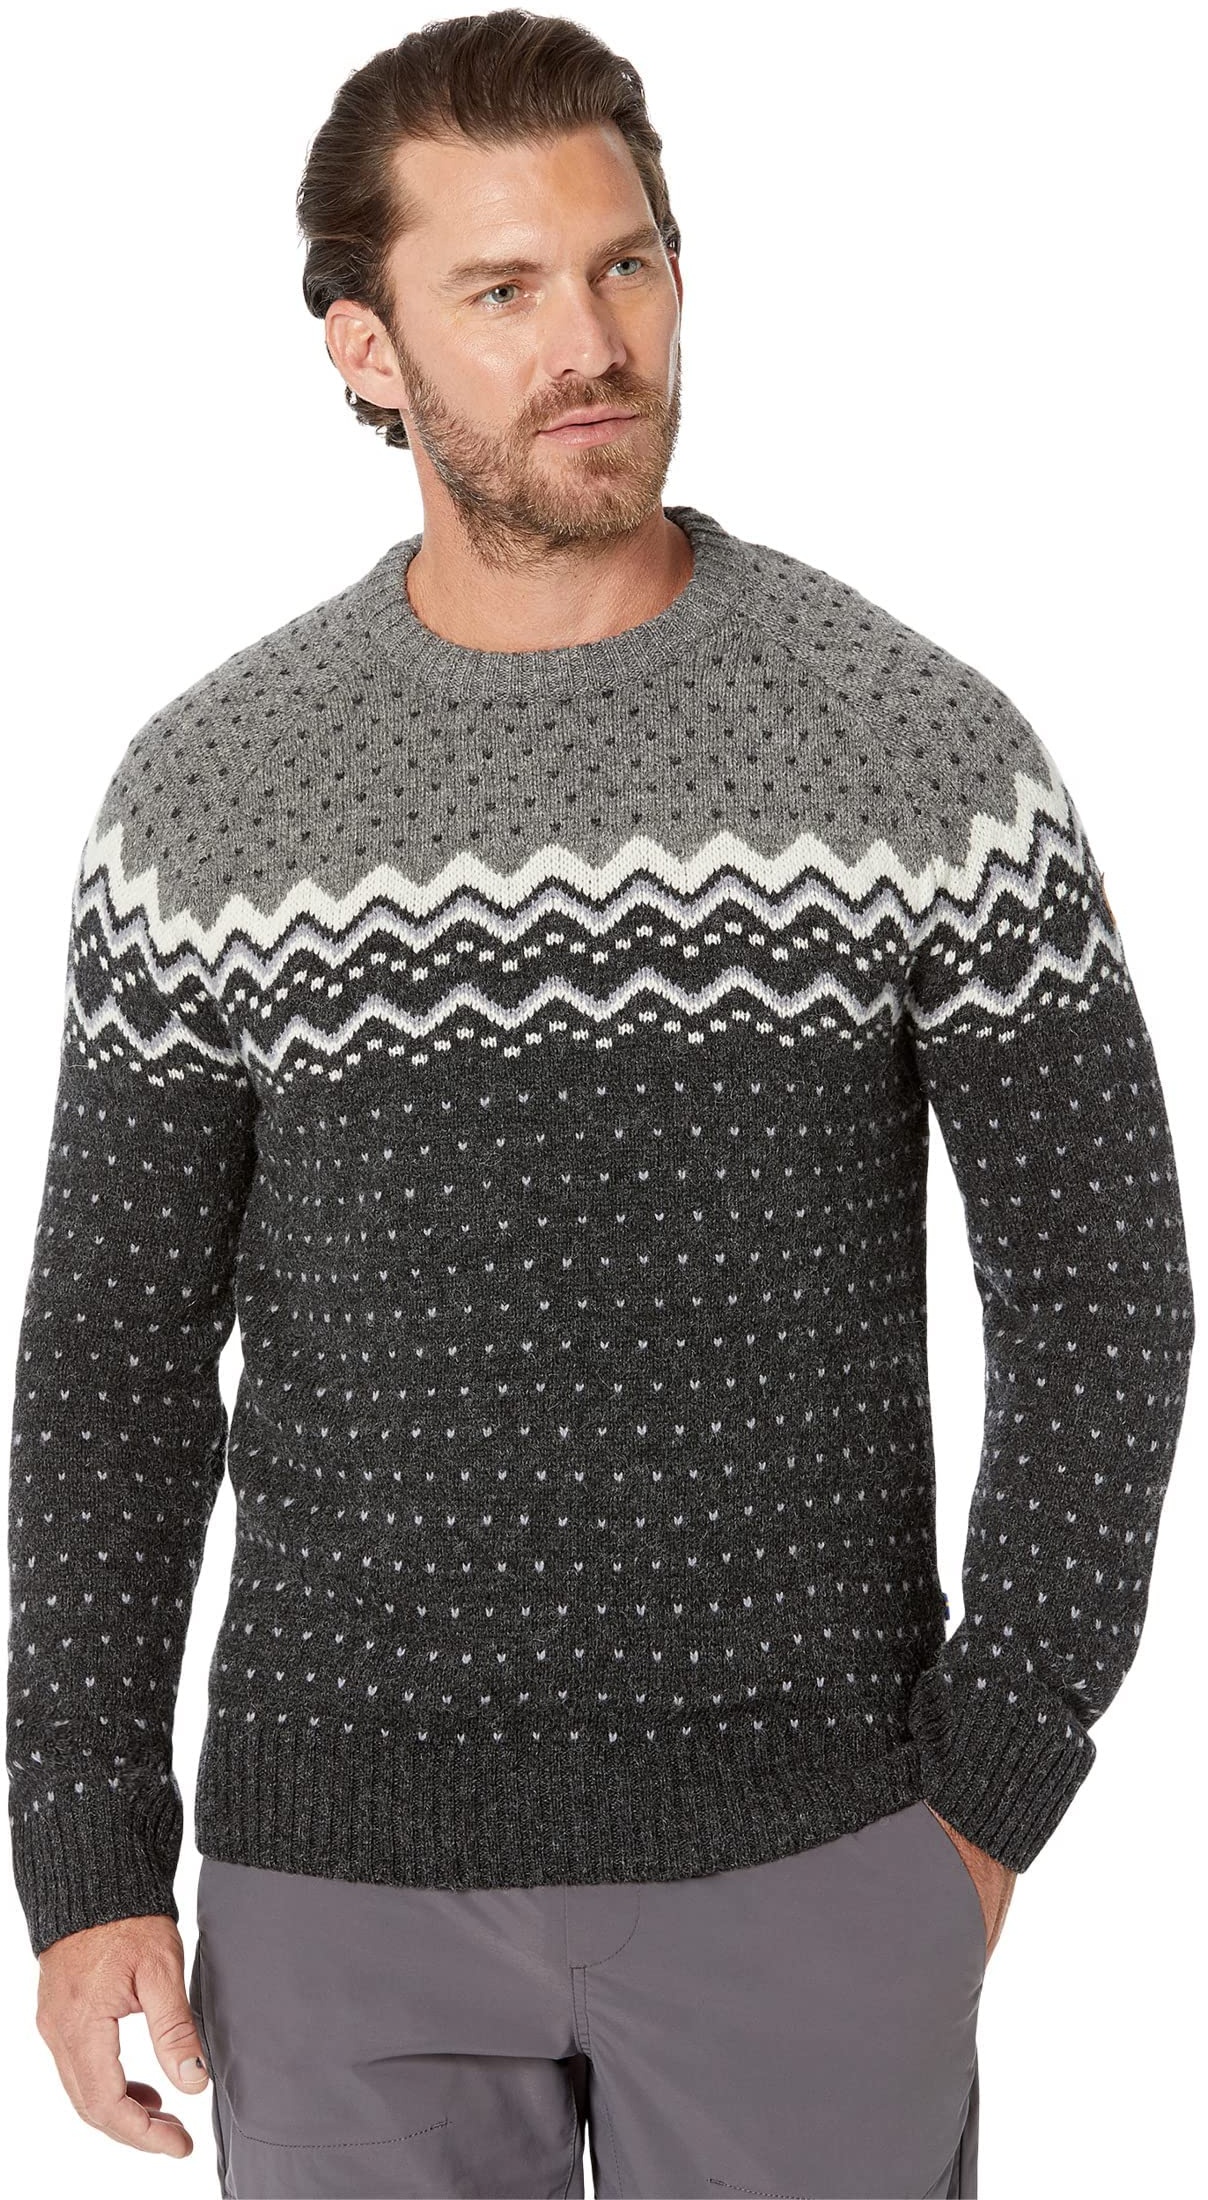 Fjallraven 81829-030-020 Övik Knit Sweater M/Övik Knit Sweater M Sweatshirt Herren Dark Grey-Grey Größe S